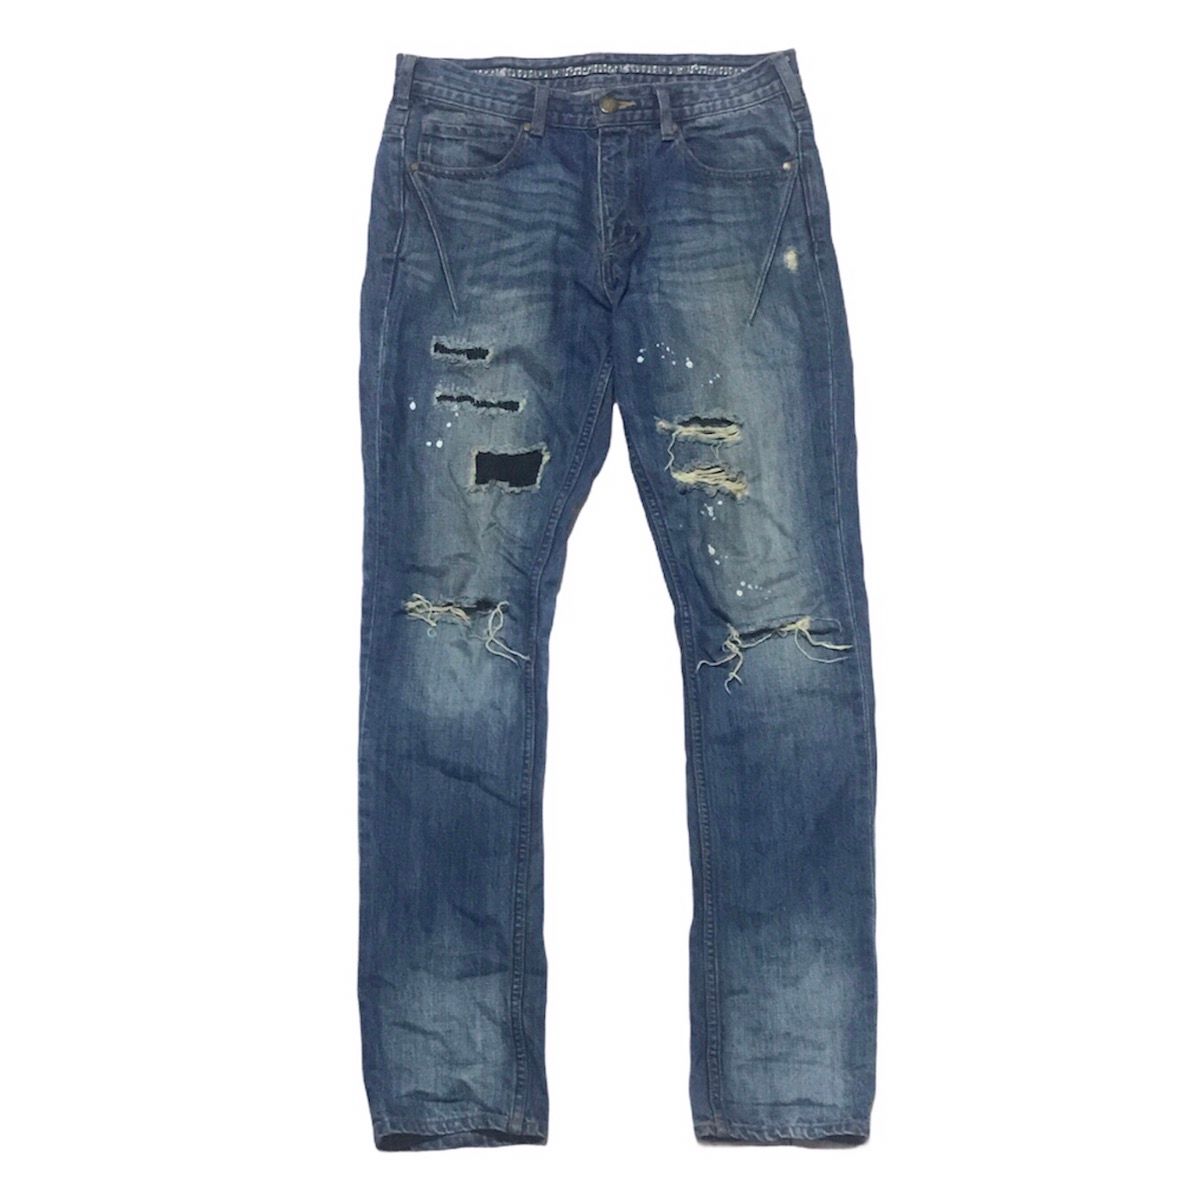 N(N) Number Nine Denim Distressed jeans - 1